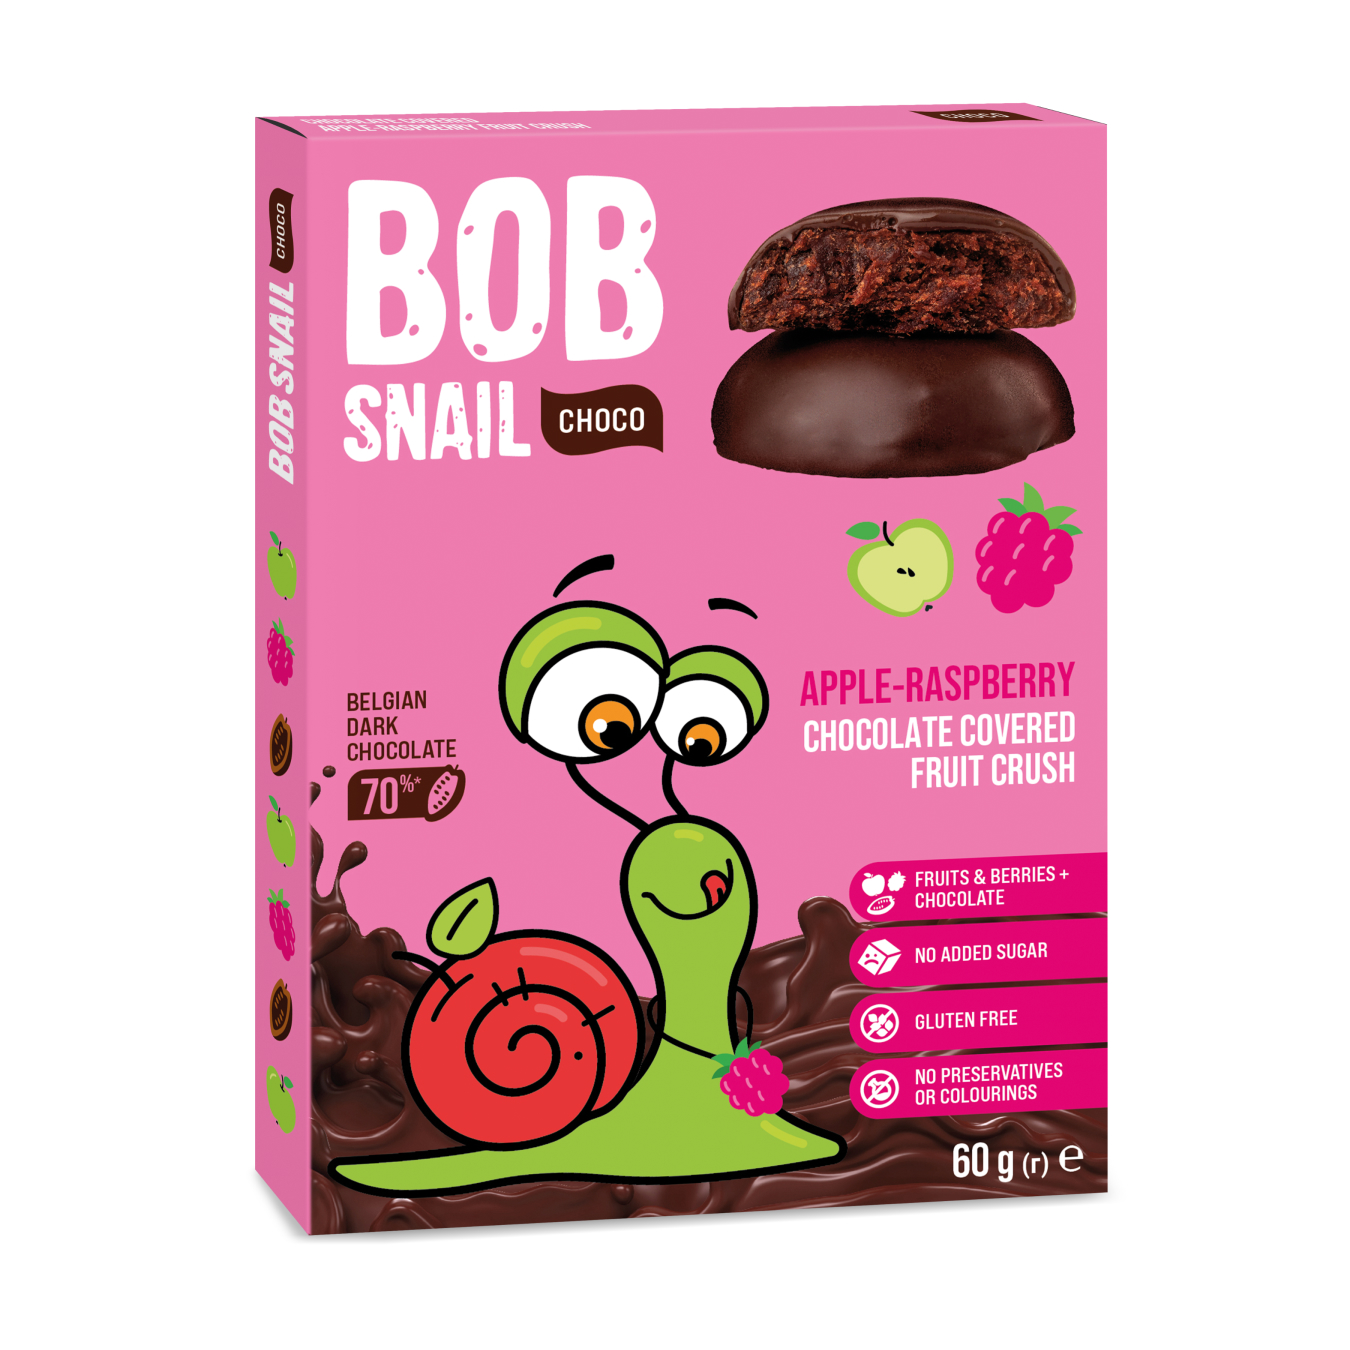 Цукерки Bob Snail яблучно-малинові в чорному шоколаді 60г